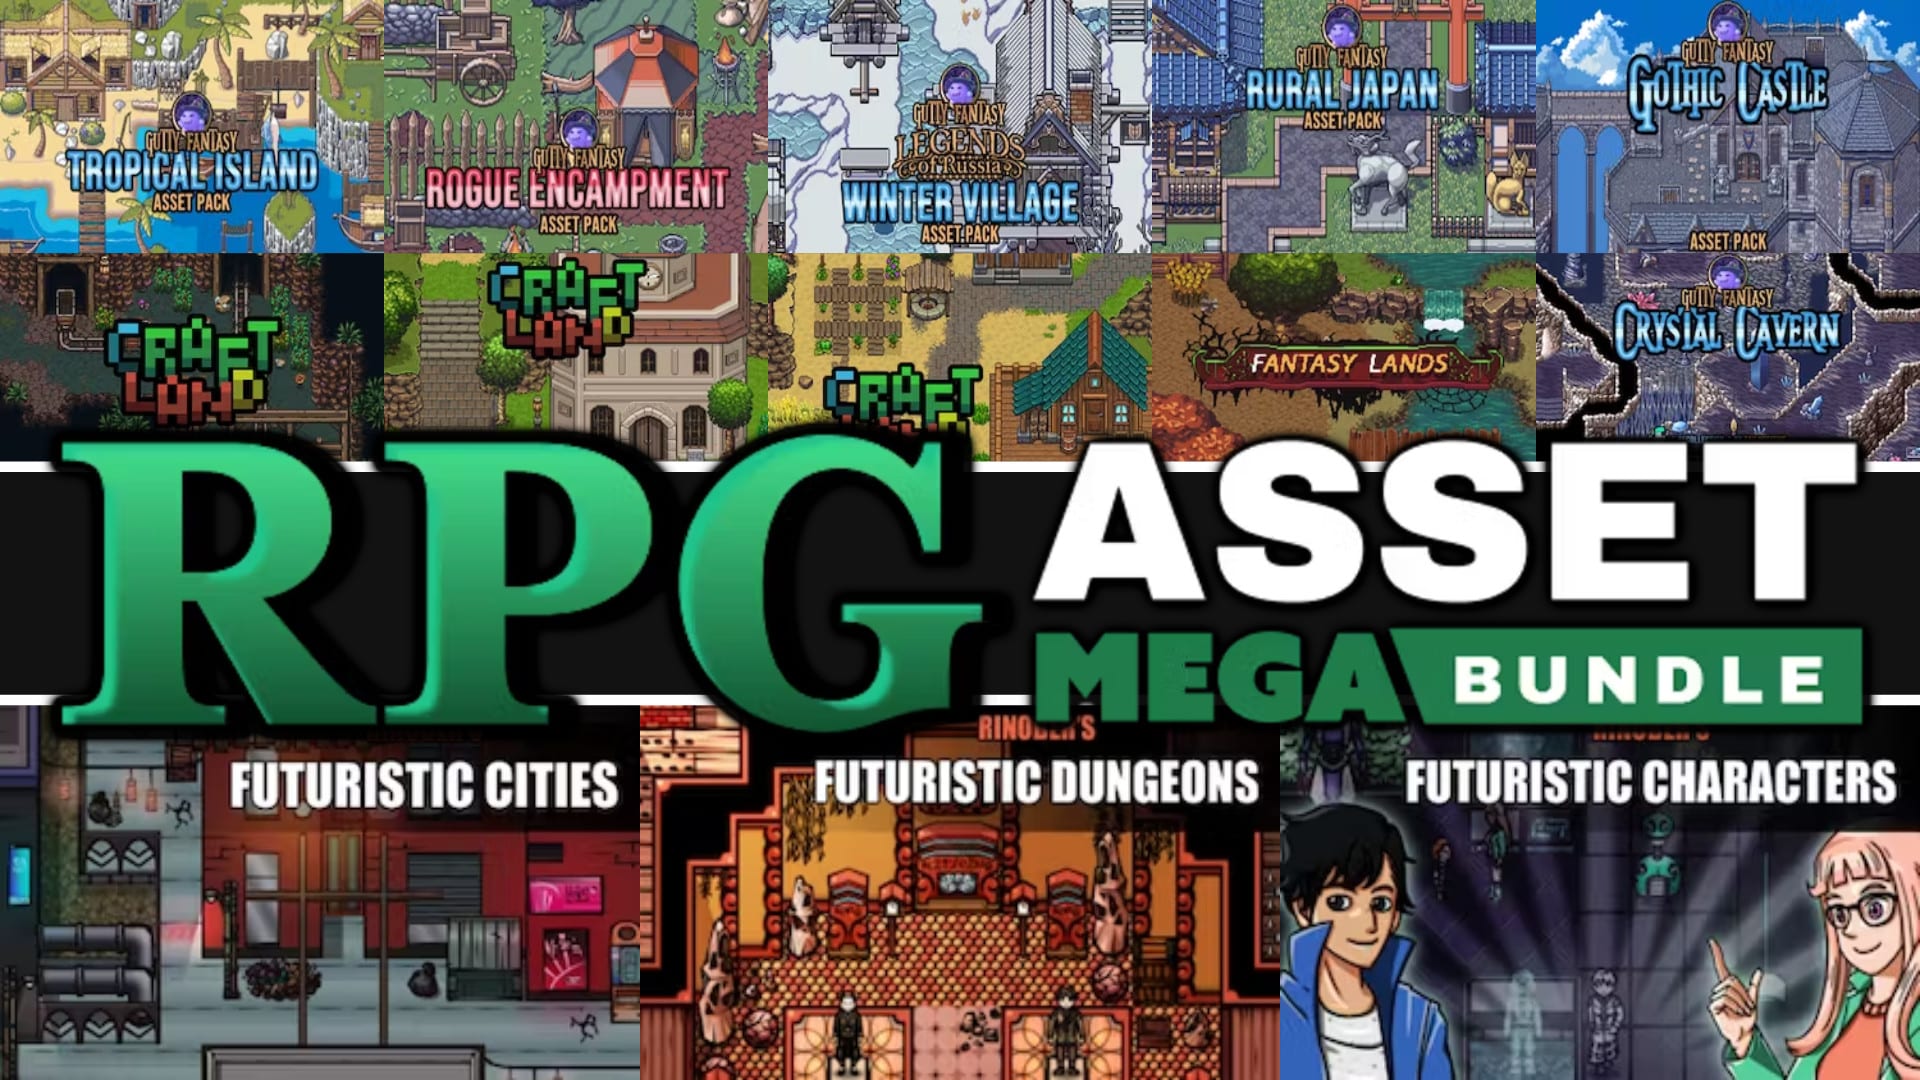 RPG Asset Mega Bundle